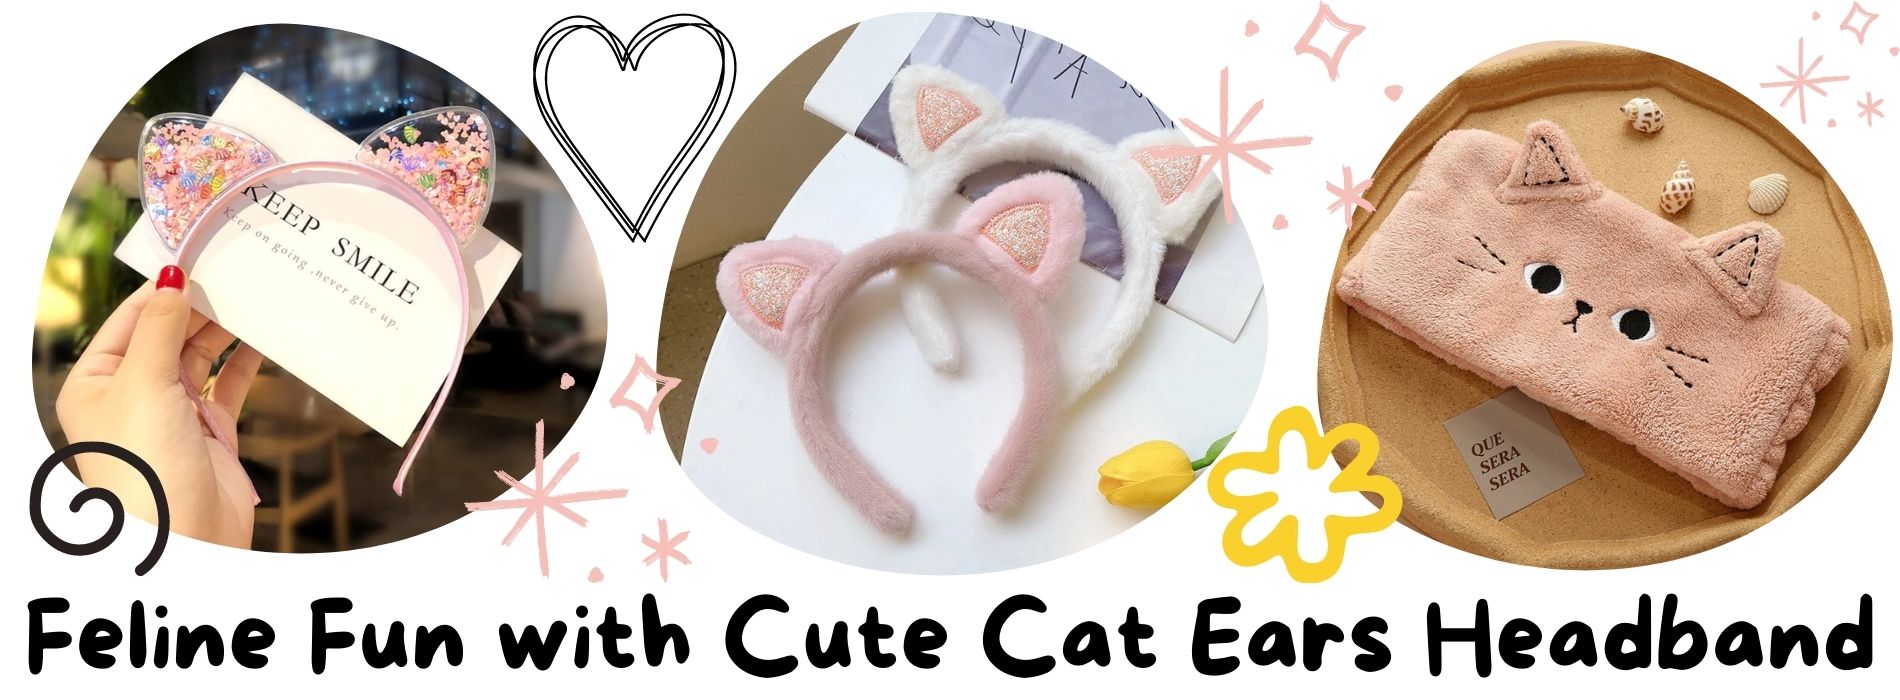 cat-ears-headband